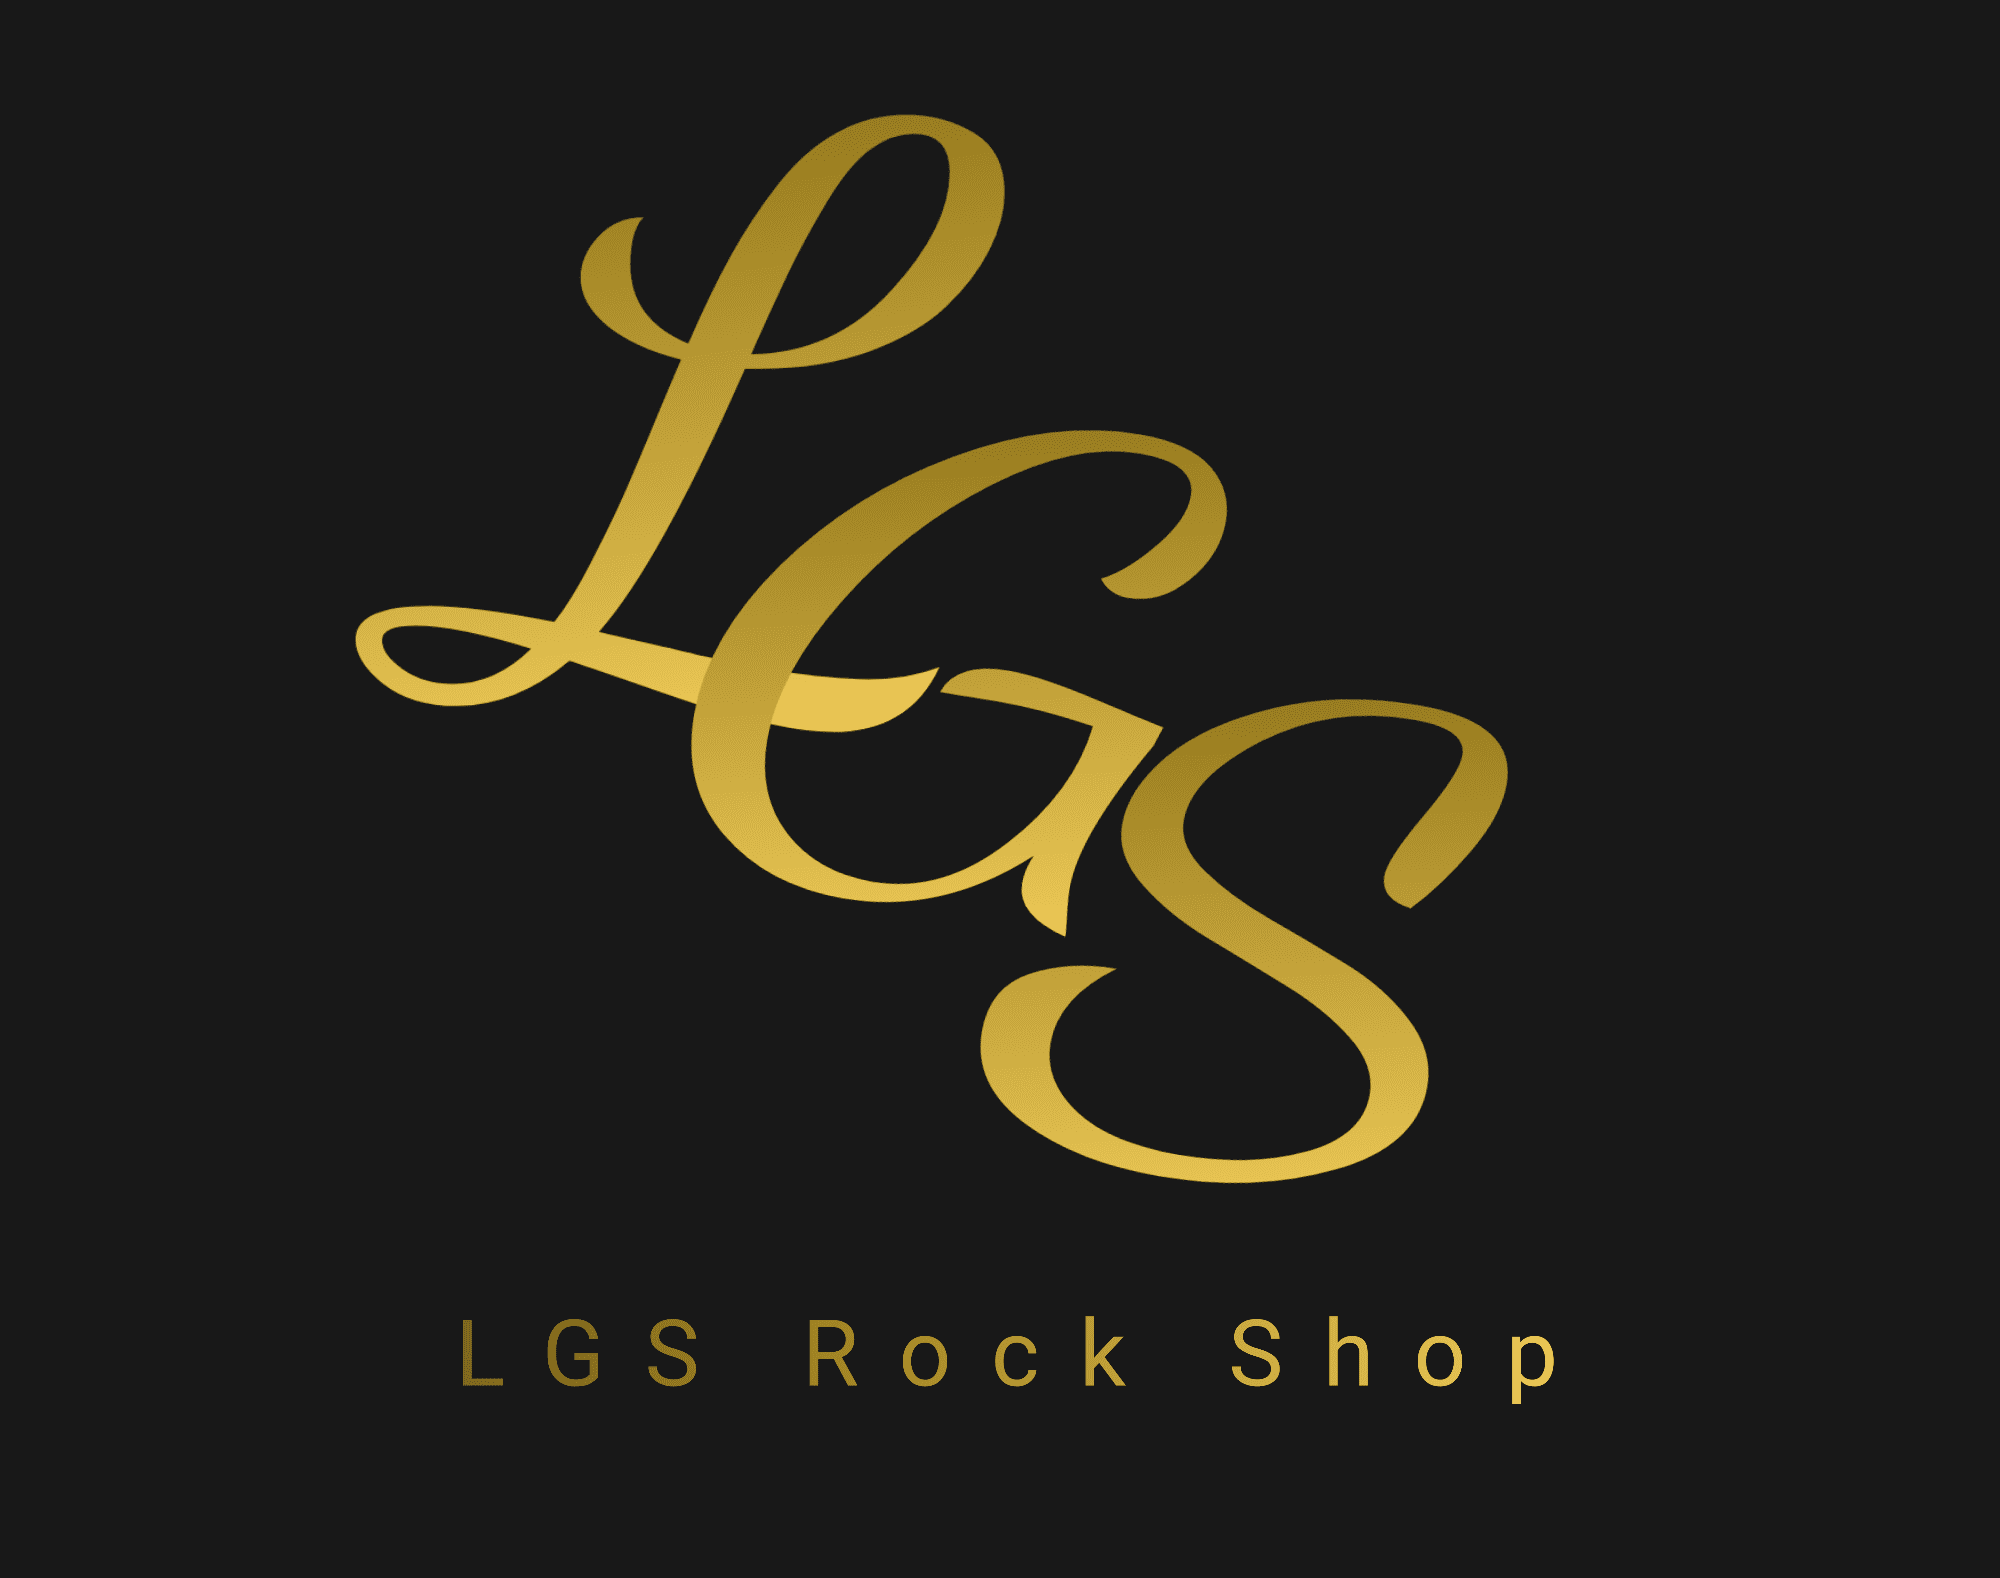 LGS Rock Shop